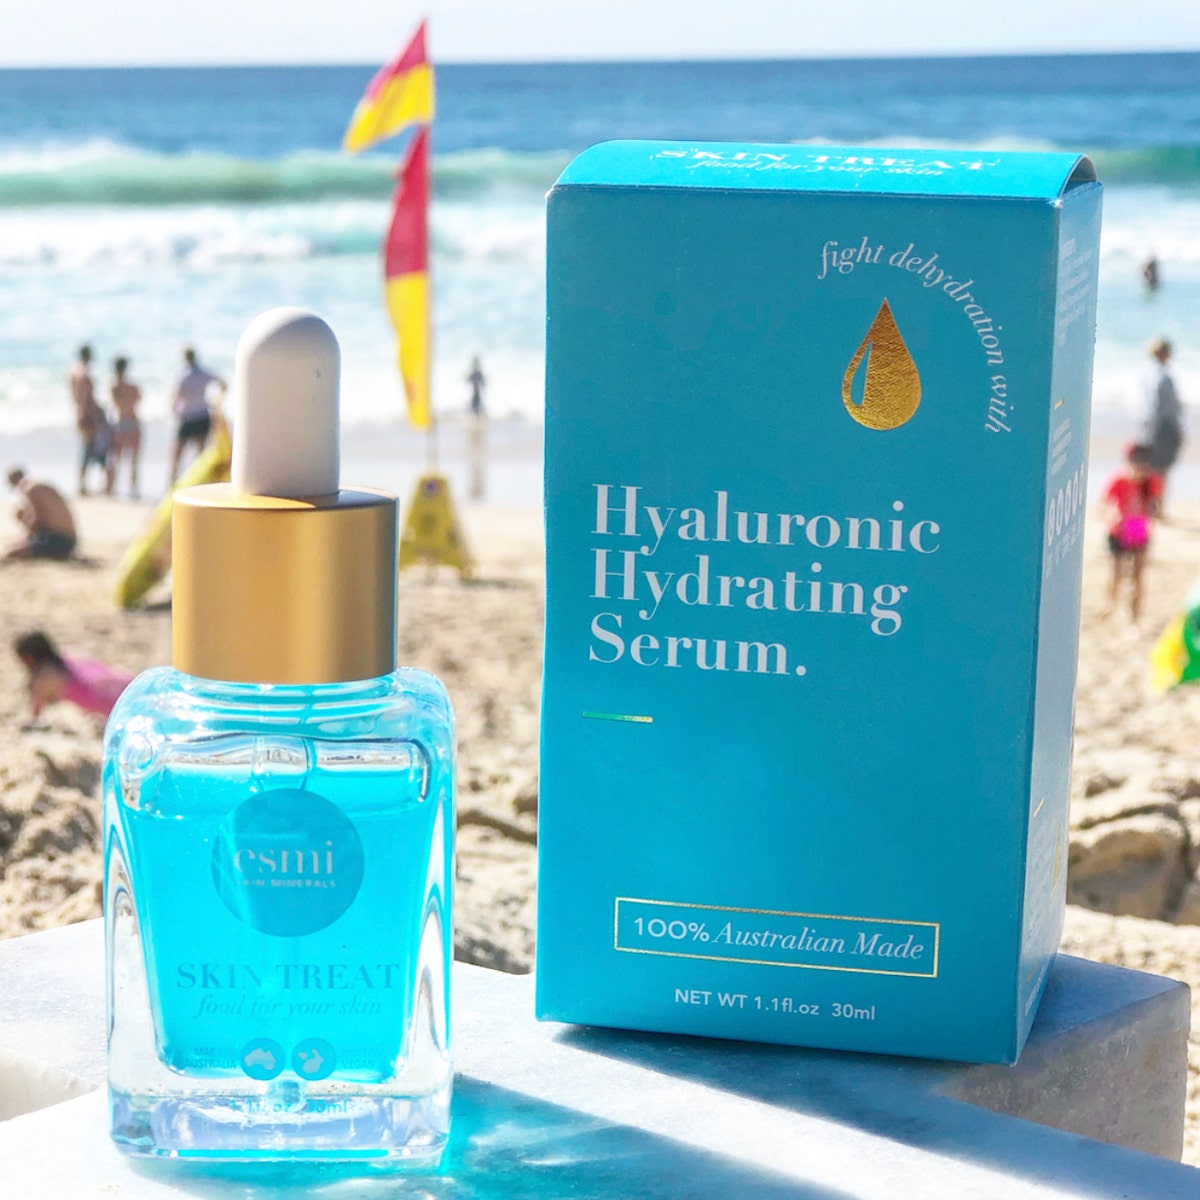 esmi Hyaluronic Hydrating Serum with luxury packaging